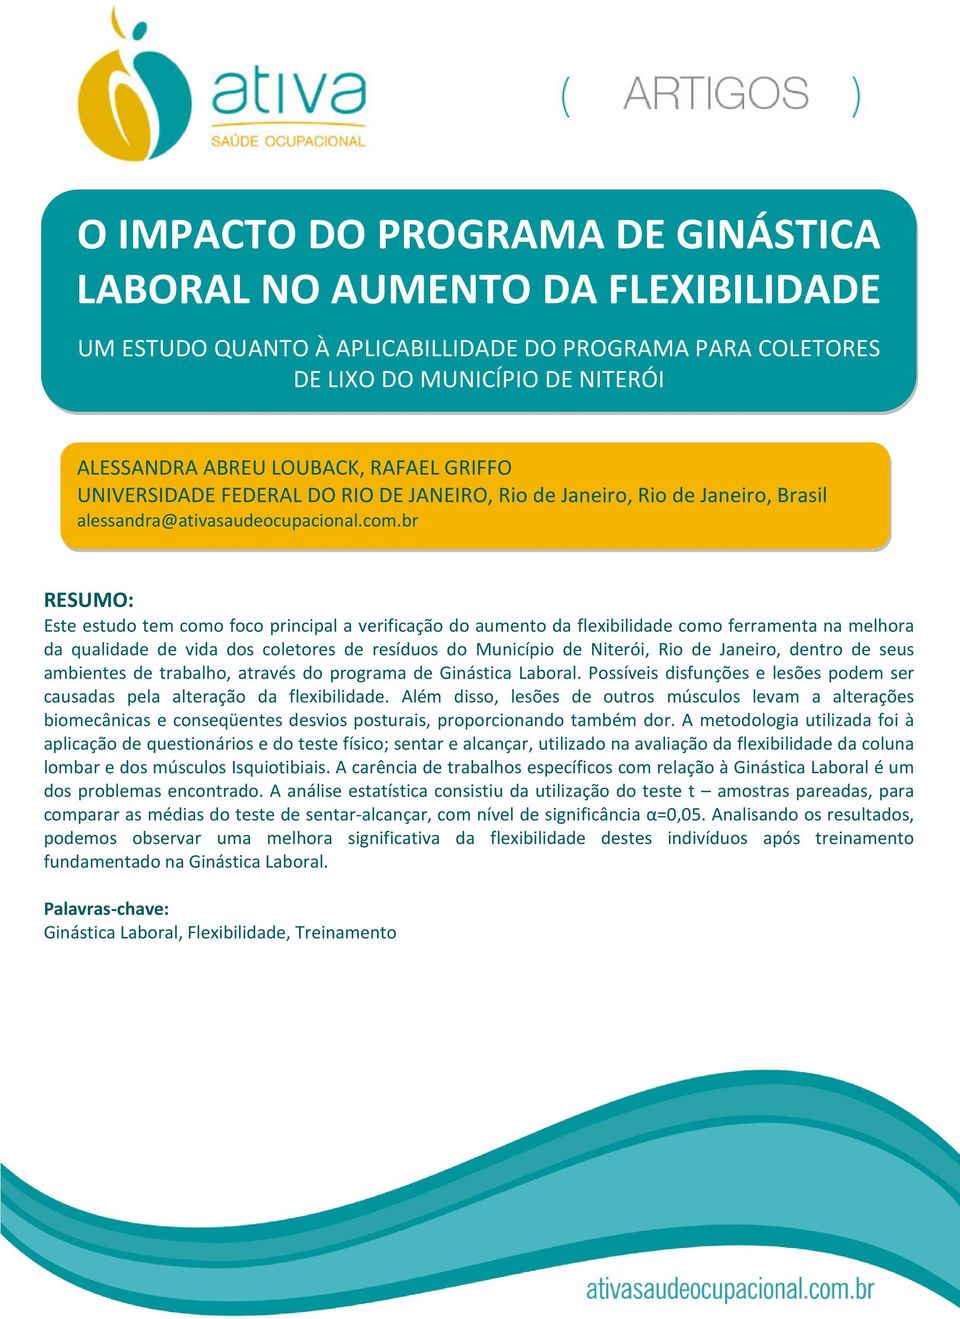 br RESUMO: Este estudo tem como foco principal a verificação do aumento da flexibilidade como ferramenta na melhora da qualidade de vida dos coletores de resíduos do Município de Niterói, Rio de